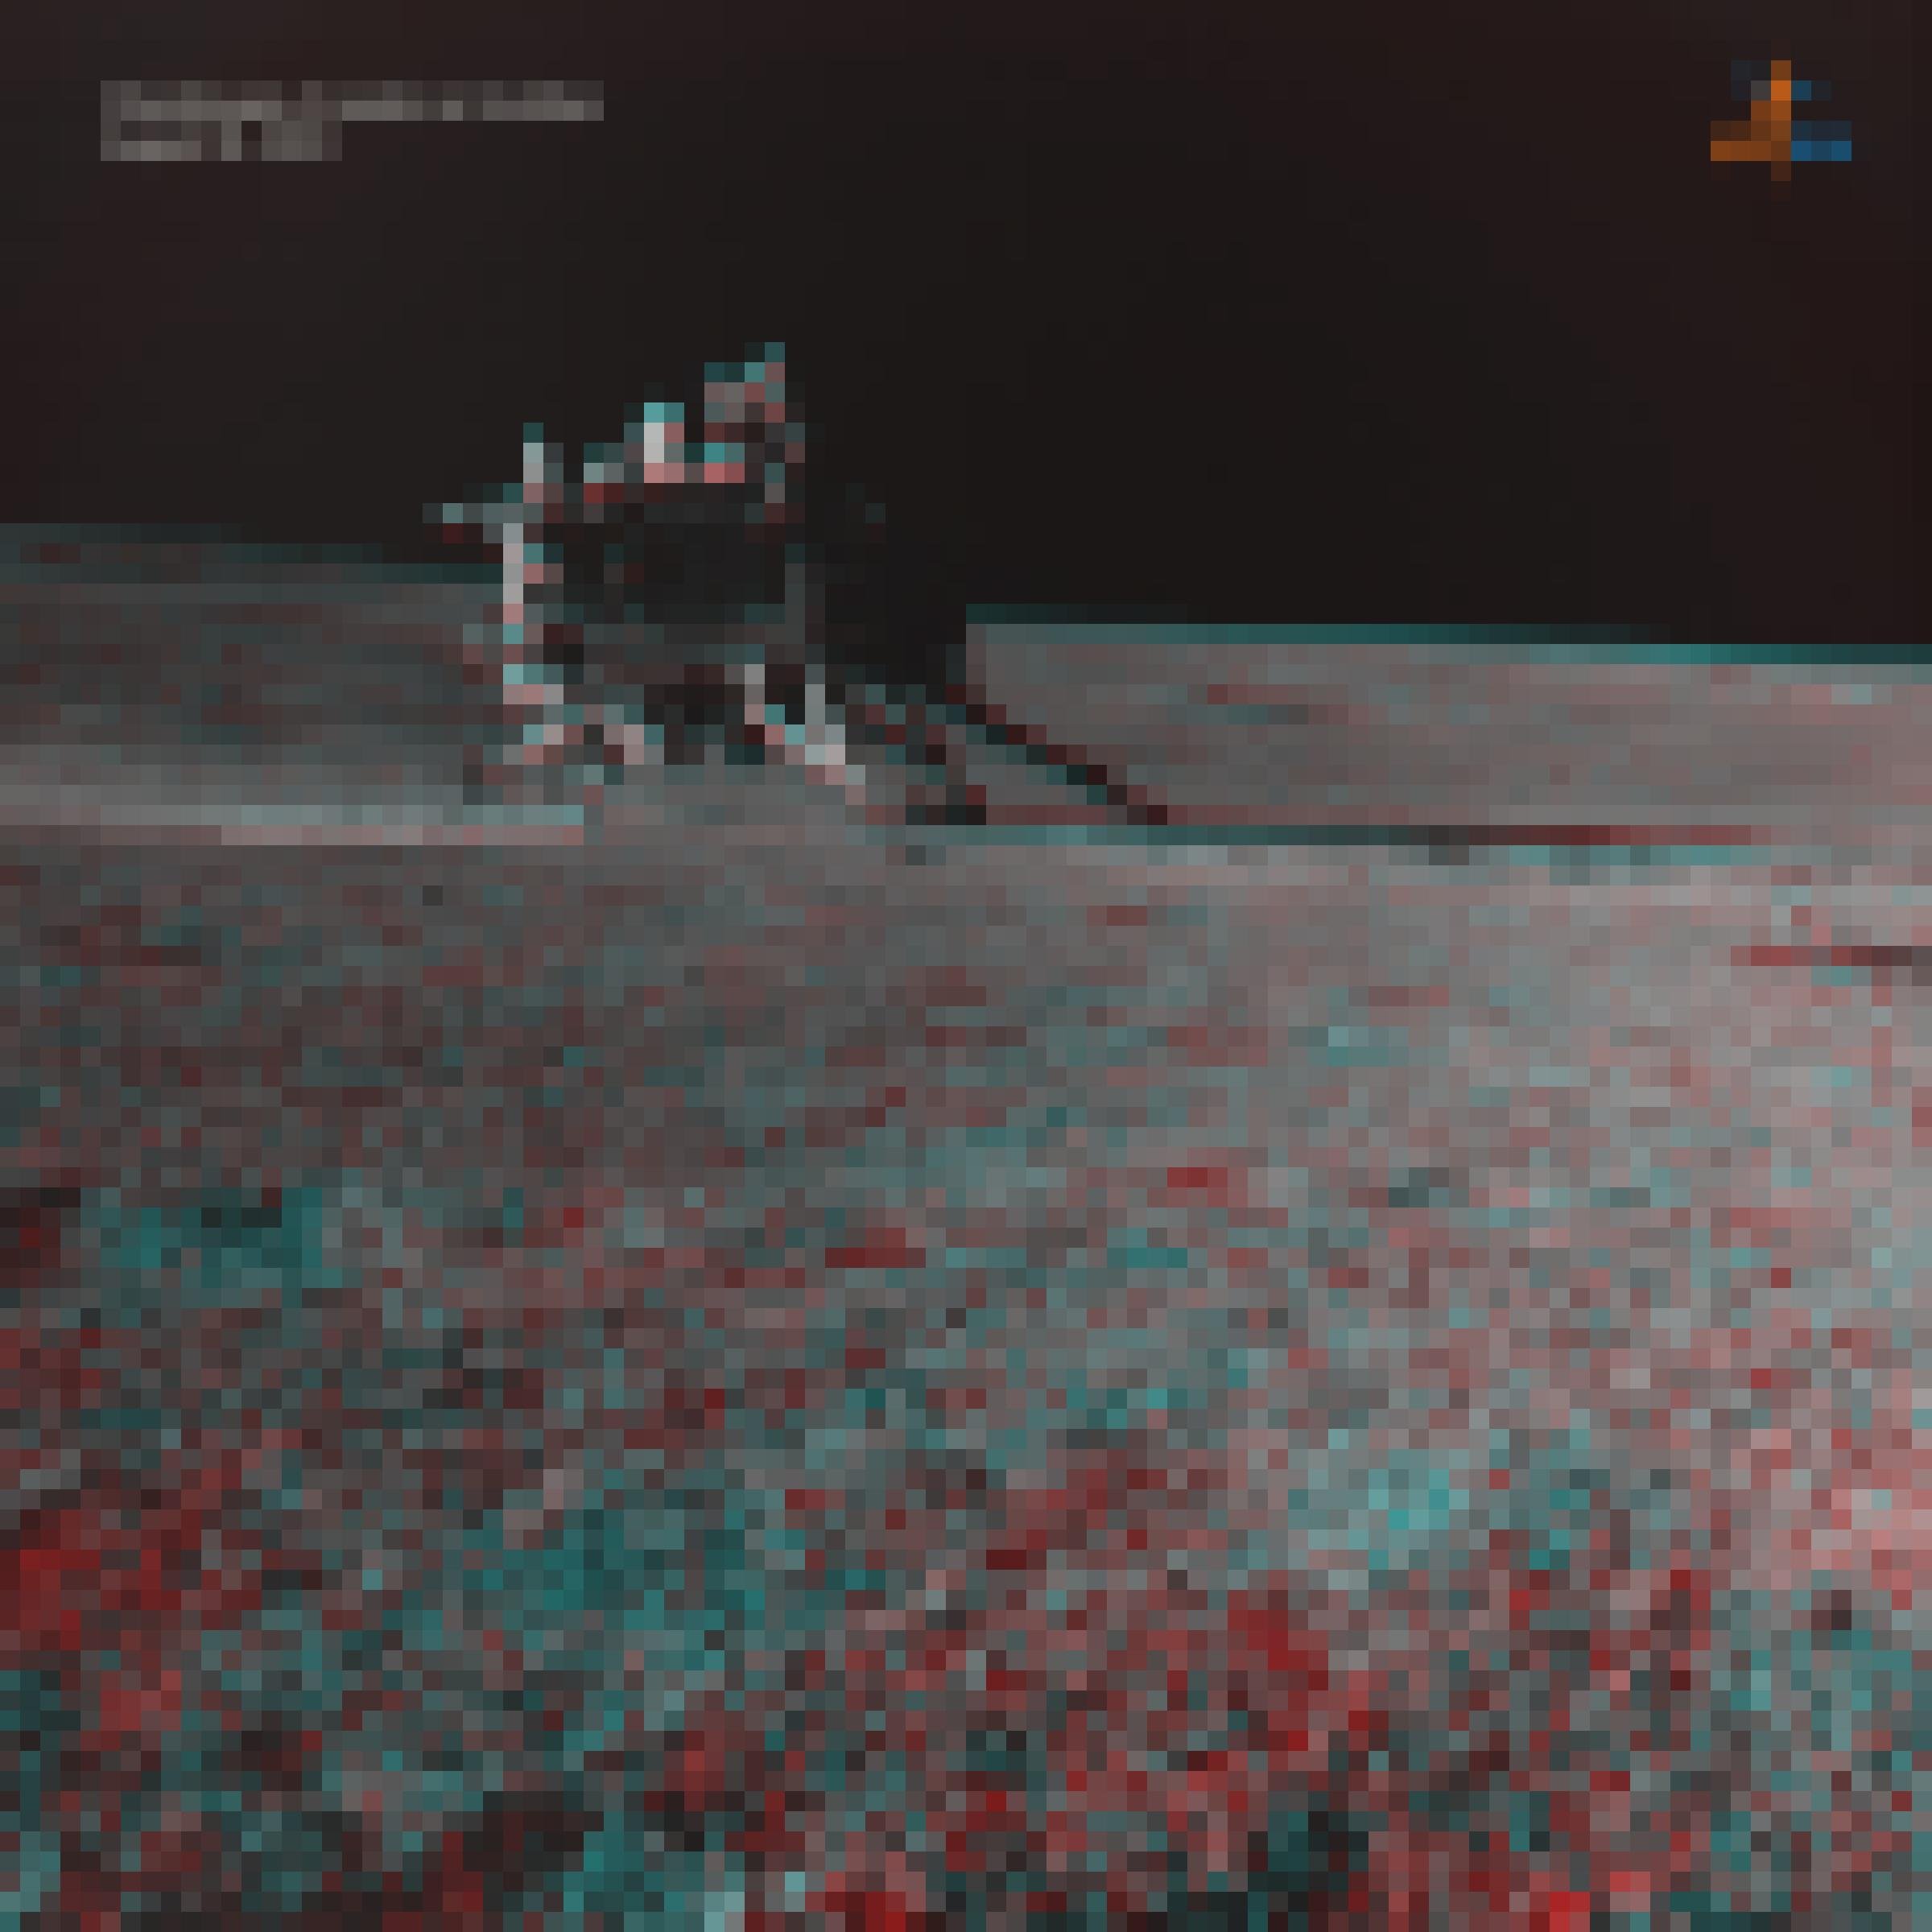 Eine Aufnahme der Landefähre Vikram, der indischen Mondmission Chandrqayaan-3, auf der Mondoberfläche.